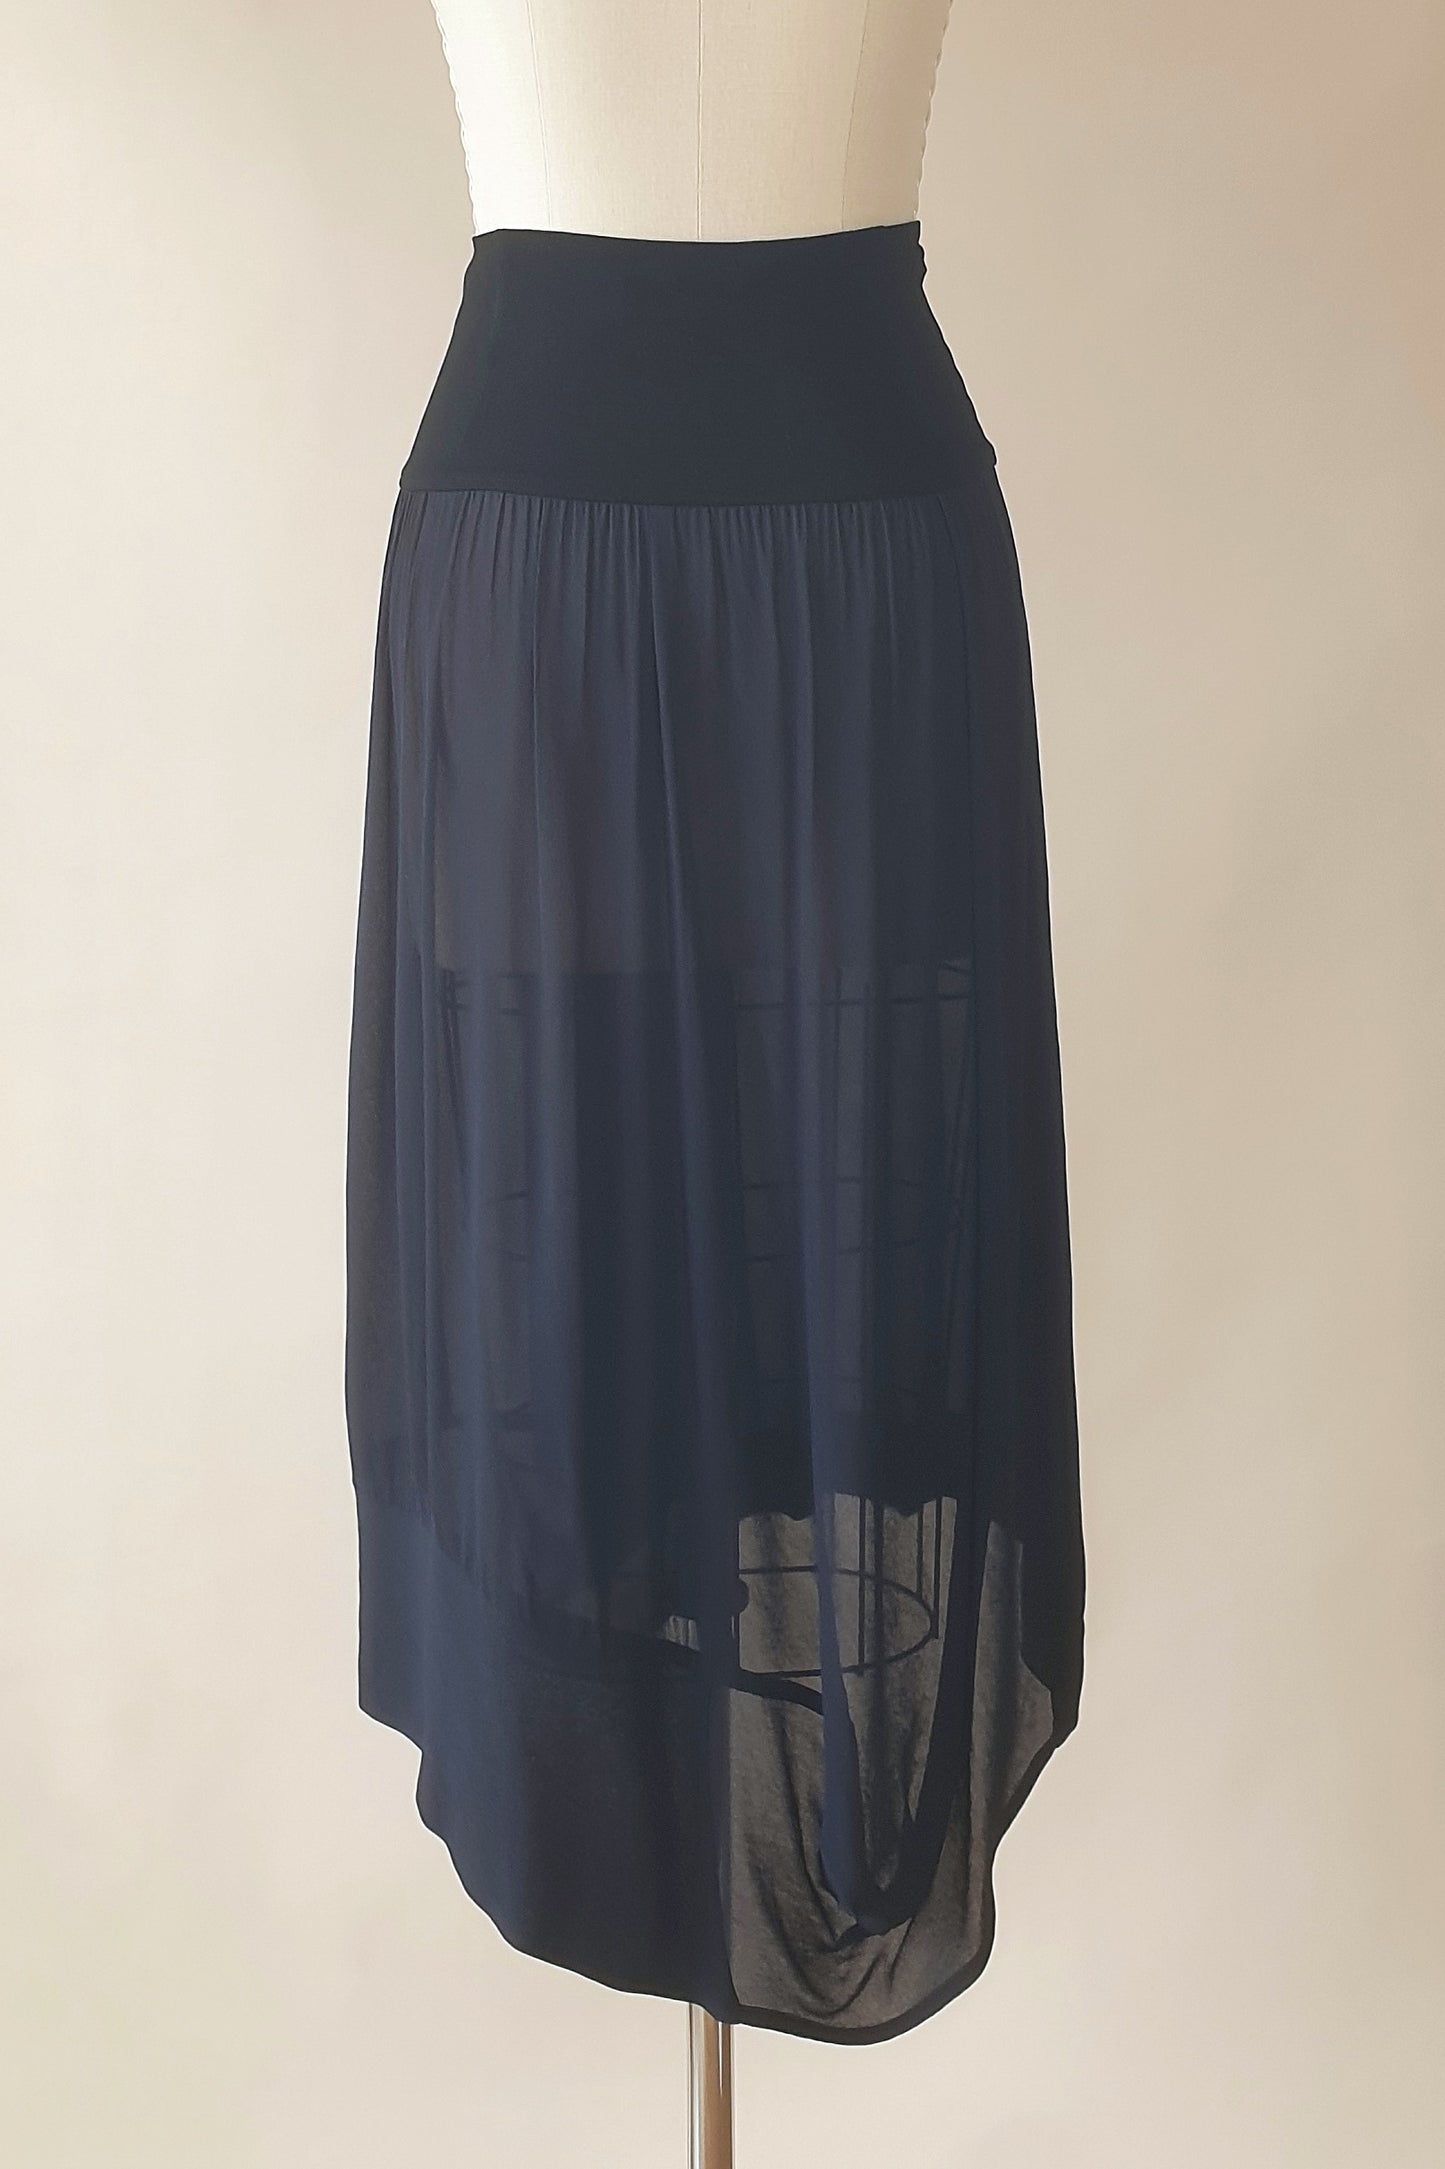 Nicola Waite sheer skirt Size XS/S